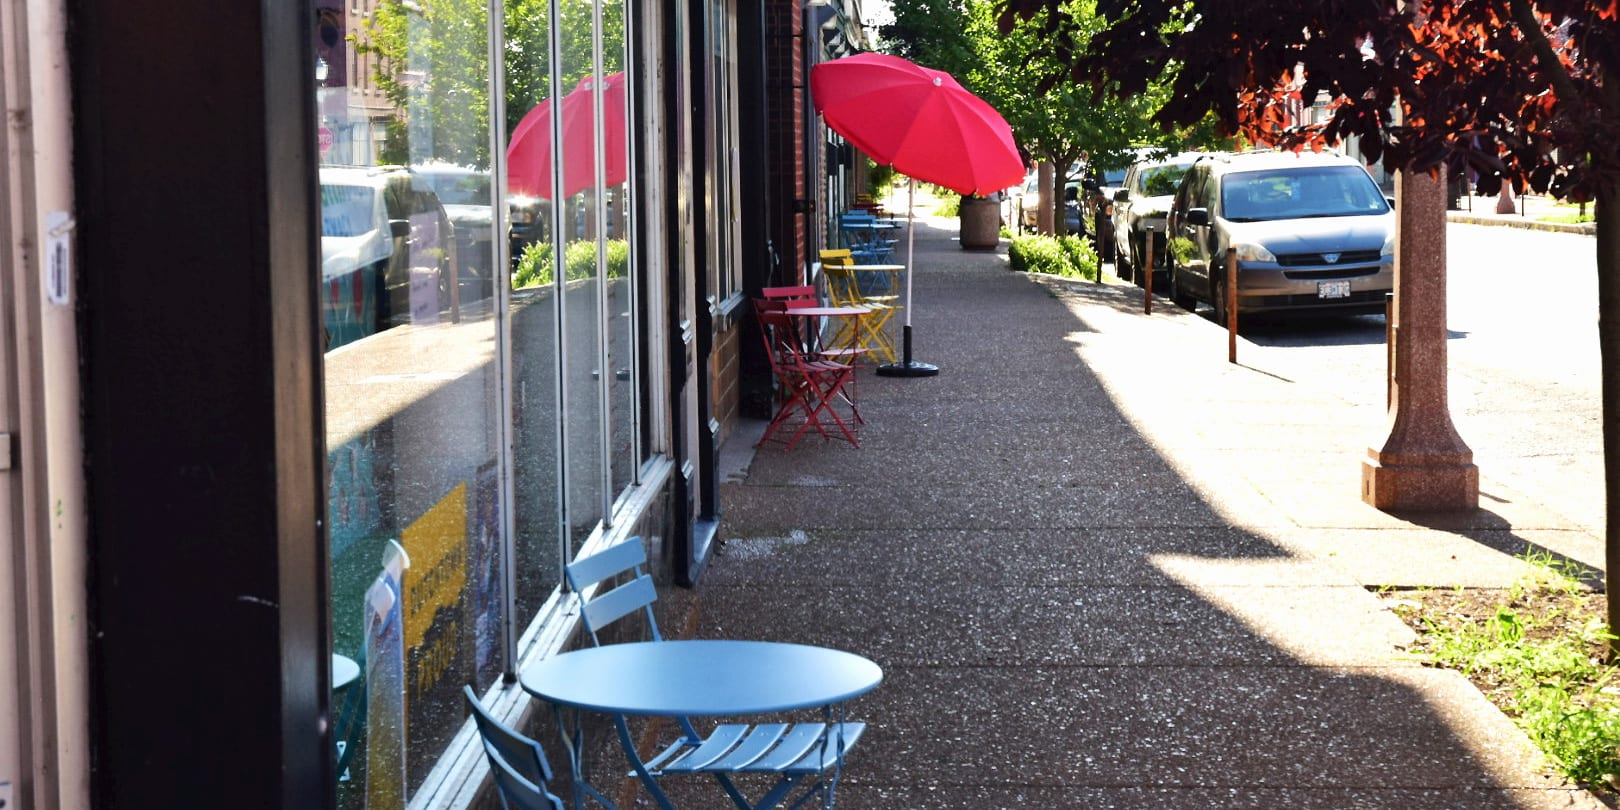 New sidewalk furniture on Meramec Street in Downtown Dutchtown.